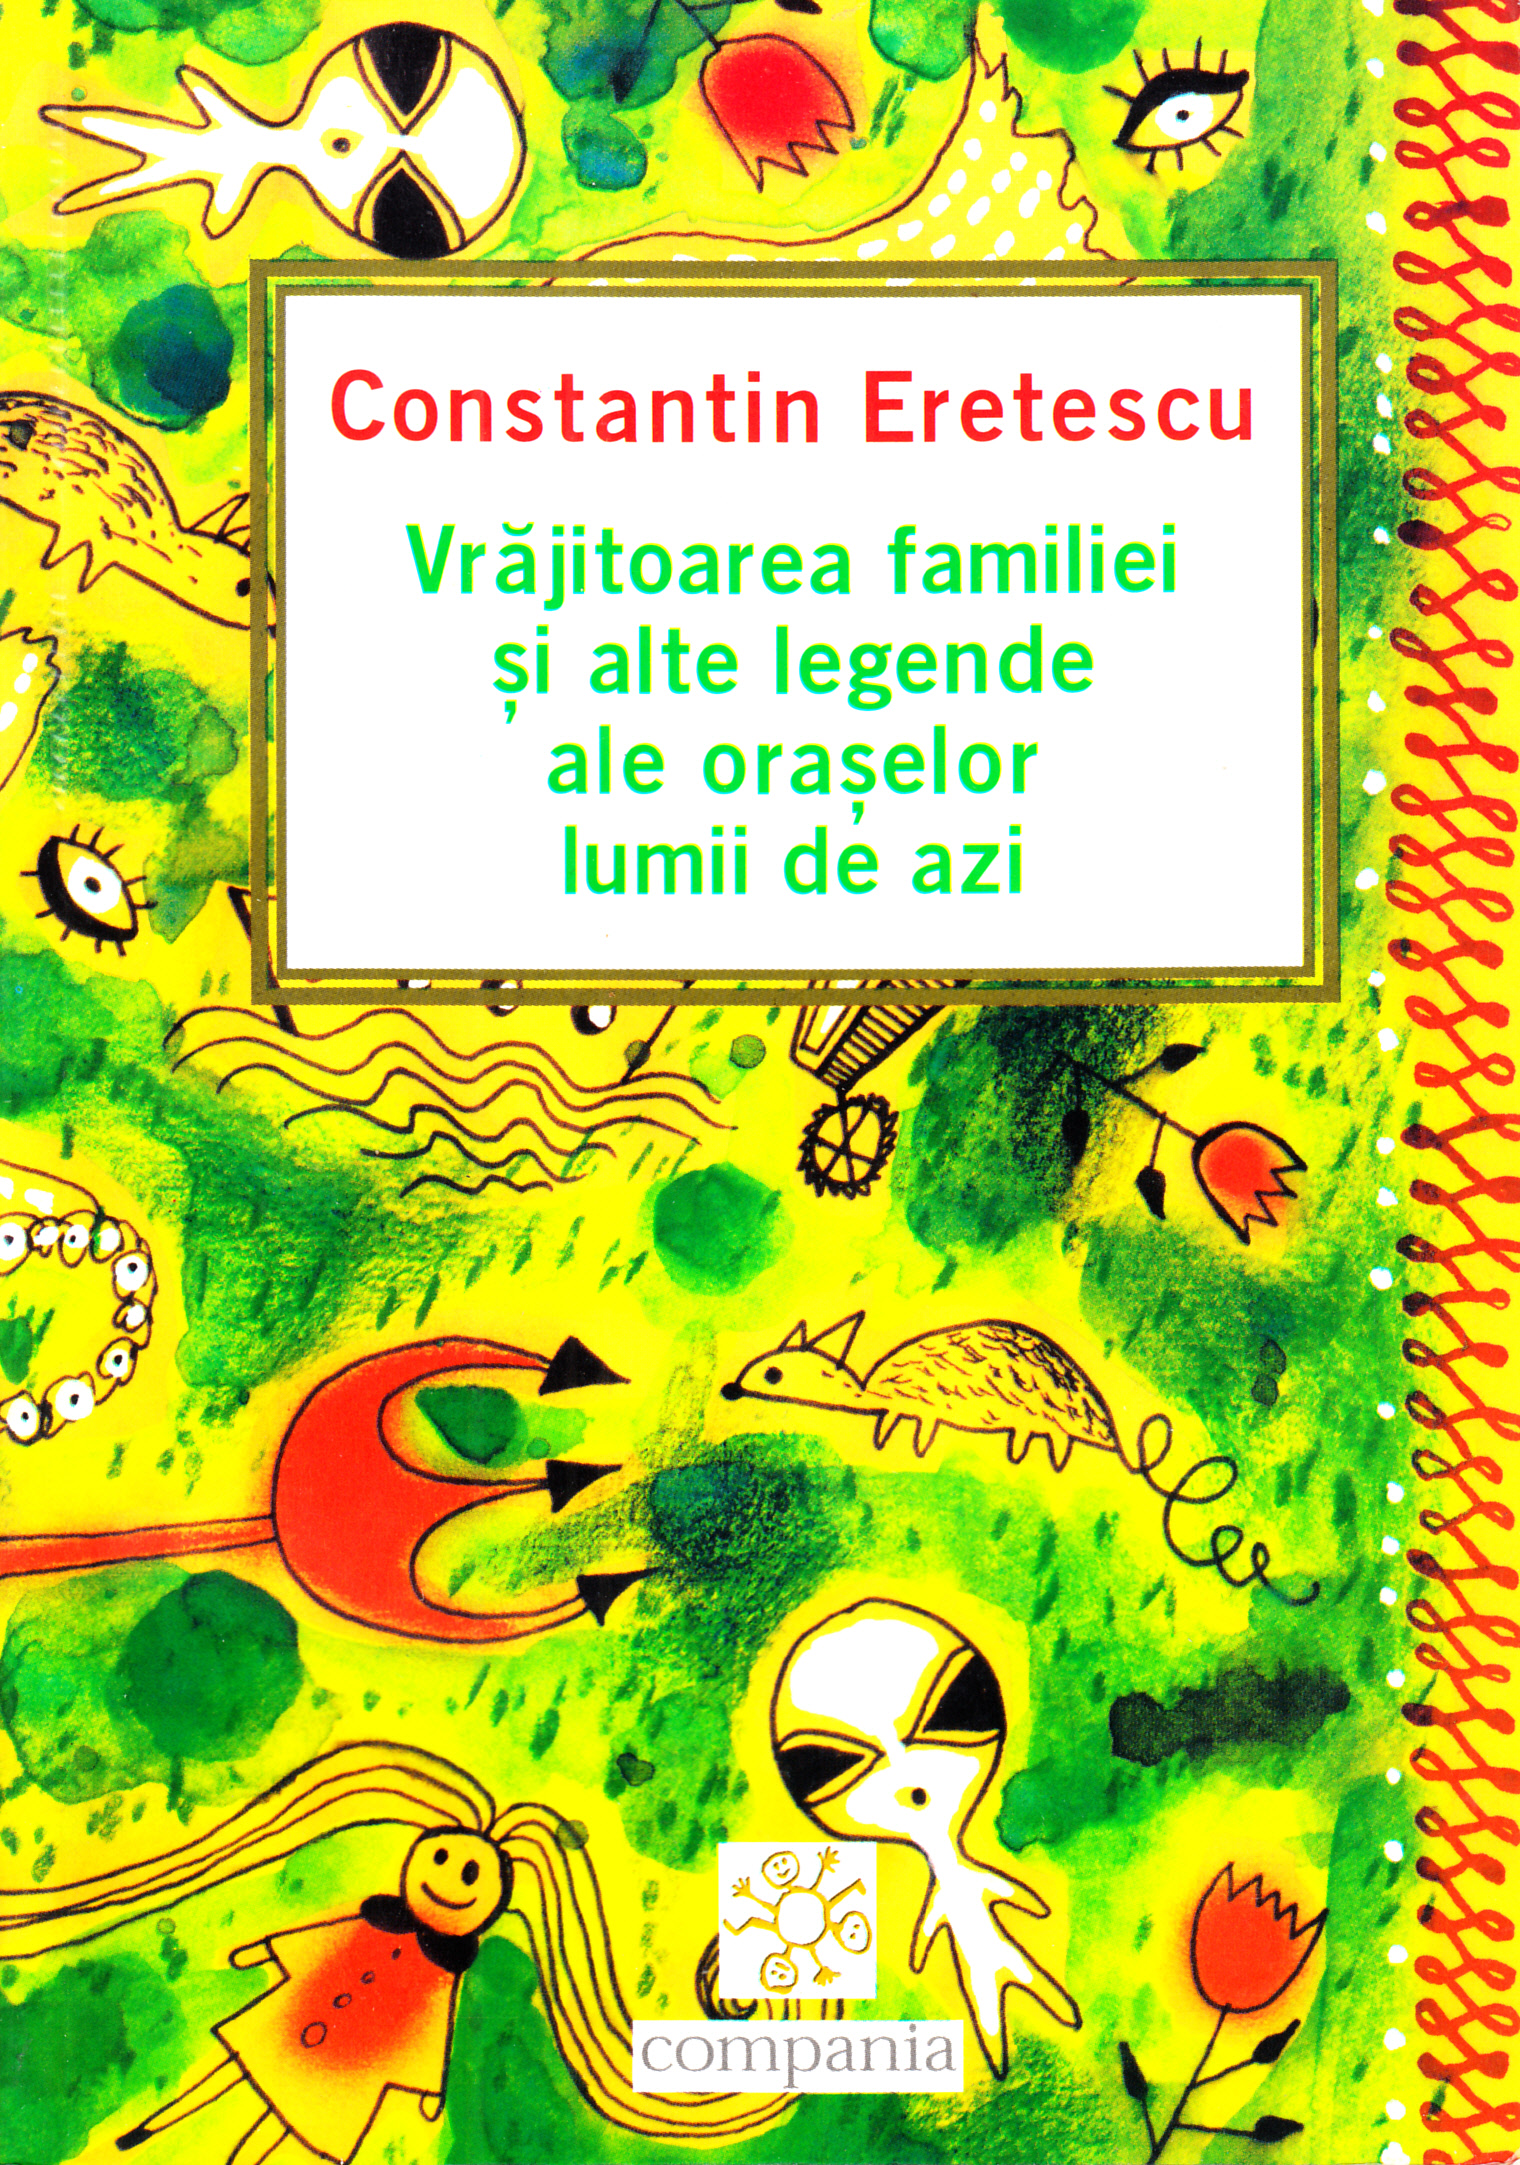 Vrajitoarea familiei si alte legende ale oraselor lumii de azi - Constantin Eretescu